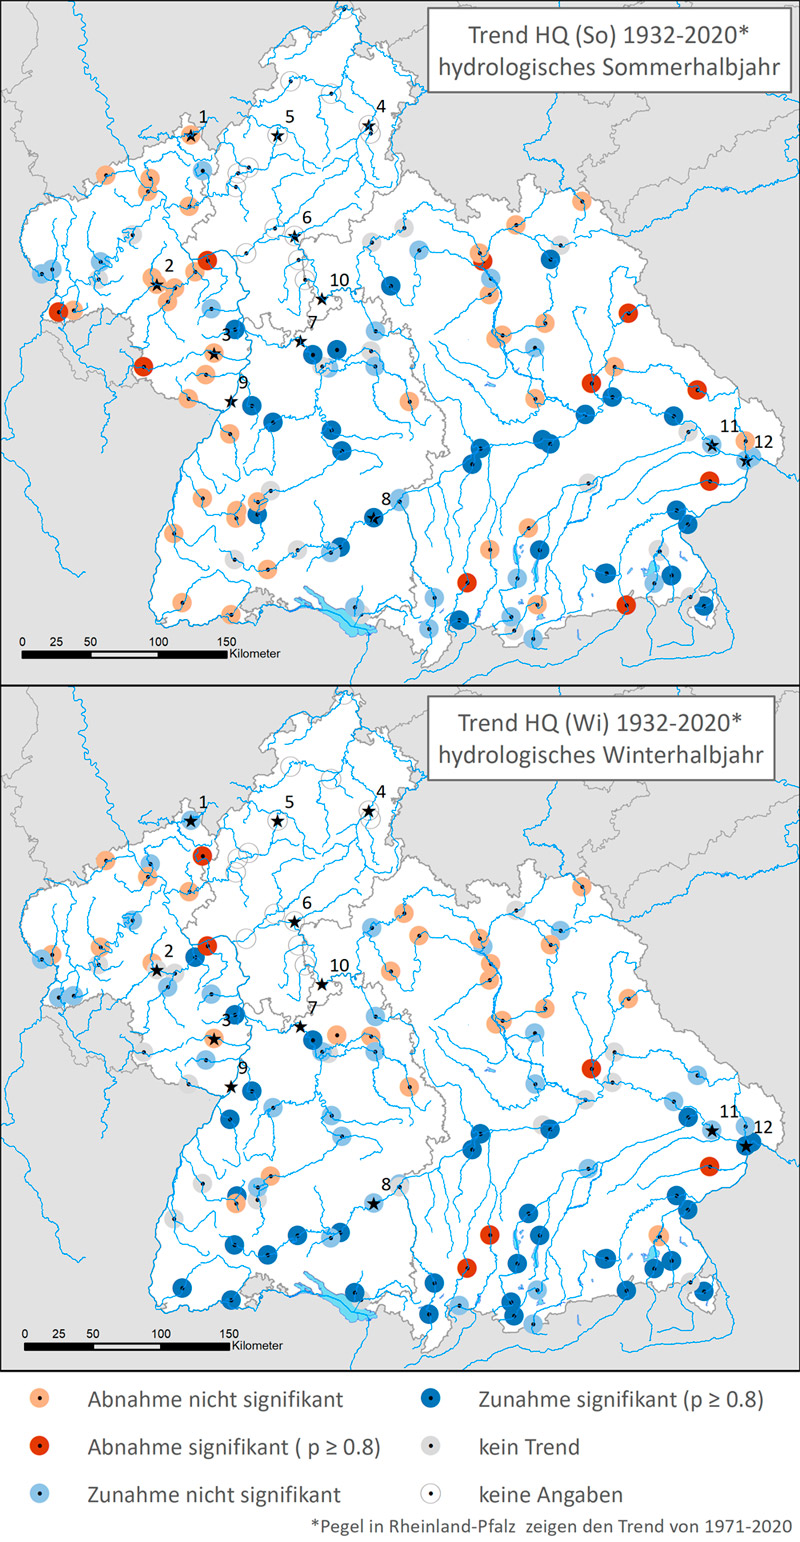 Zwei Landkarten der Bundesländer Baden-Württemberg, Bayern und Rheinland-Pfalz, die die Lage der 116 Pegel zur Untersuchung des Trendverhaltens der mittleren Hochwasserabflüsse im Zeitraum 1932 - 2020 enthalten. Die obere Karte zeigt das Trendverhalten der Pegel im Sommerhalbjahr, die untere Karte stellt dagegen das Winterhalbjahr dar. In den Karten sind die Pegel als kleine farbige Kreisflächen eingetragen. Darunter befindet sich die Kartenlegende. Diese erläutert die Bedeutung der einzelnen Pegelfarben. Dabei steht Hellrot für „Abnahme nicht signifikant“, Dunkelrot für „Abnahme signifikant (Signifikanzniveau mindestens 80 Prozent)“, Hellblau für „Zunahme nicht signifikant“, Dunkelblau für „Zunahme signifikant (Signifikanzniveau mindestens 80 Prozent)“, Grau für „kein Trend“ und Weiß für „keine Angaben“.  Außerdem enthält die Legende den Hinweis, dass sich der Trend der Pegel in Rheinland-Pfalz auf den Zeitraum von 1971 bis 2020 bezieht. Die 12 Pegel, die im Kapitel „Zukünftige Veränderungen“ ausgewertet wurden, sind jeweils mit einem Sternchen markiert. Aus diesem Grund ist auch das Bundesland Hessen bereits in dieser Karte dargestellt.